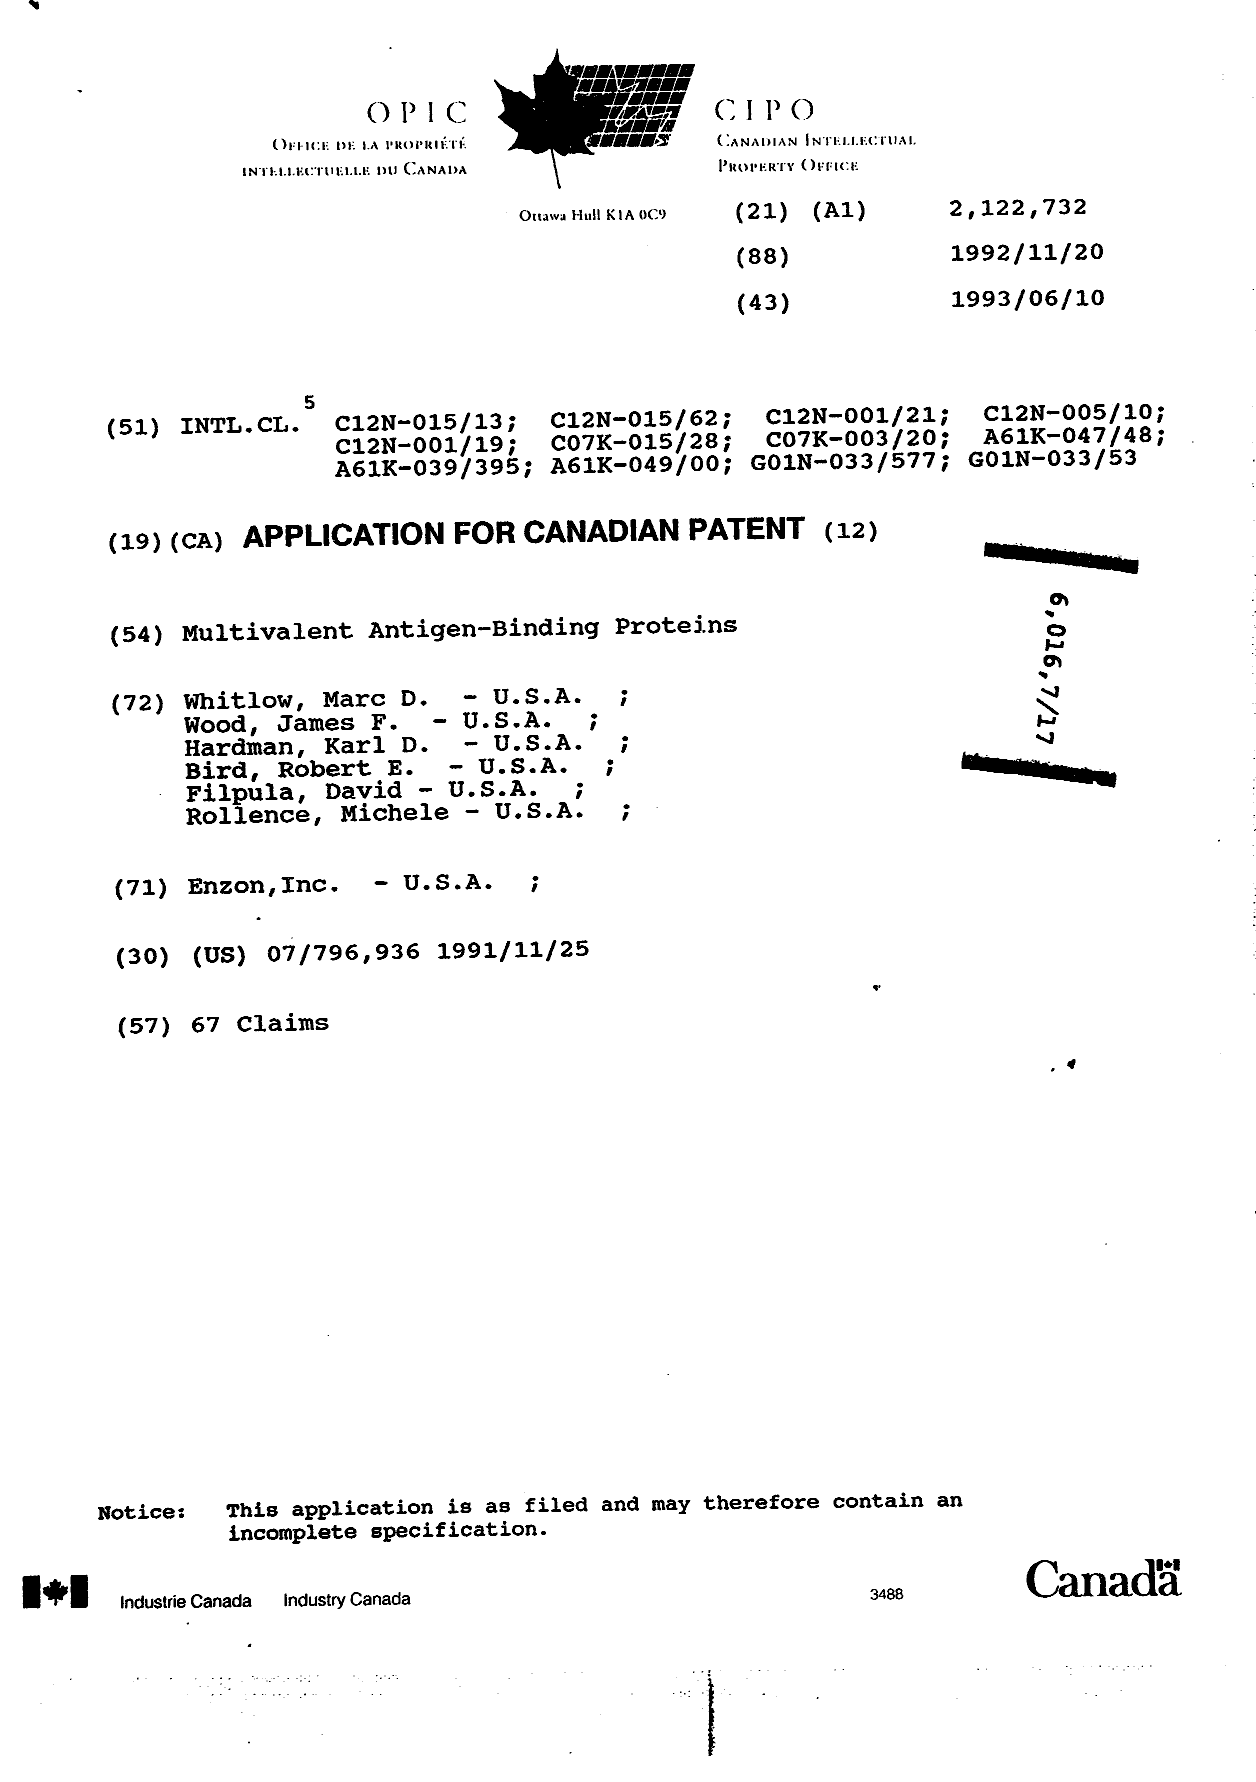 Document de brevet canadien 2122732. Page couverture 19950826. Image 1 de 1